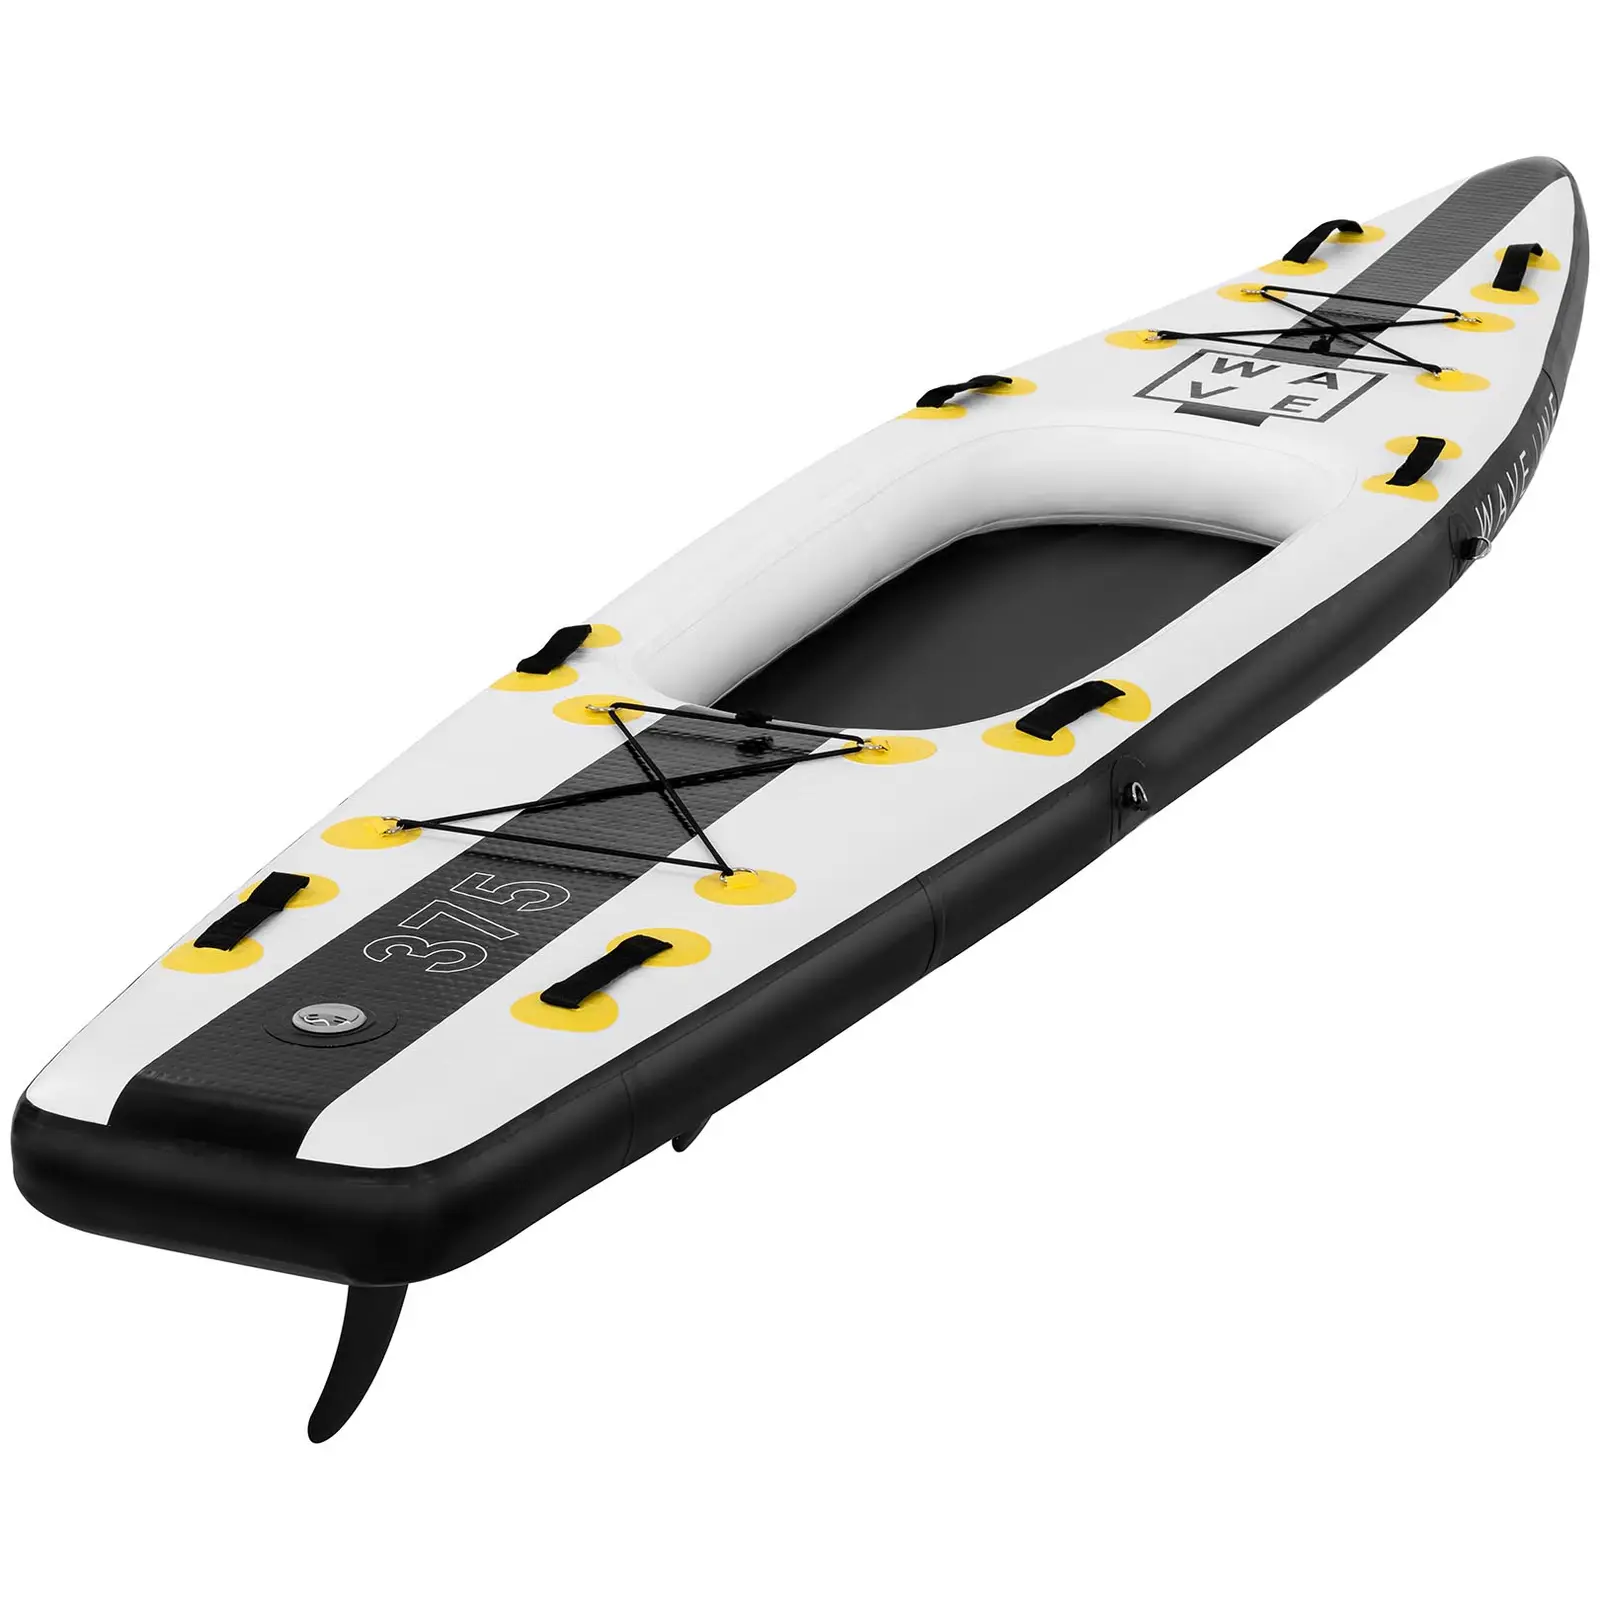 Stand up paddle gonflable - 120 kg - Noir/jaune - Kit incluant pagaie, siège et accessoires - 1